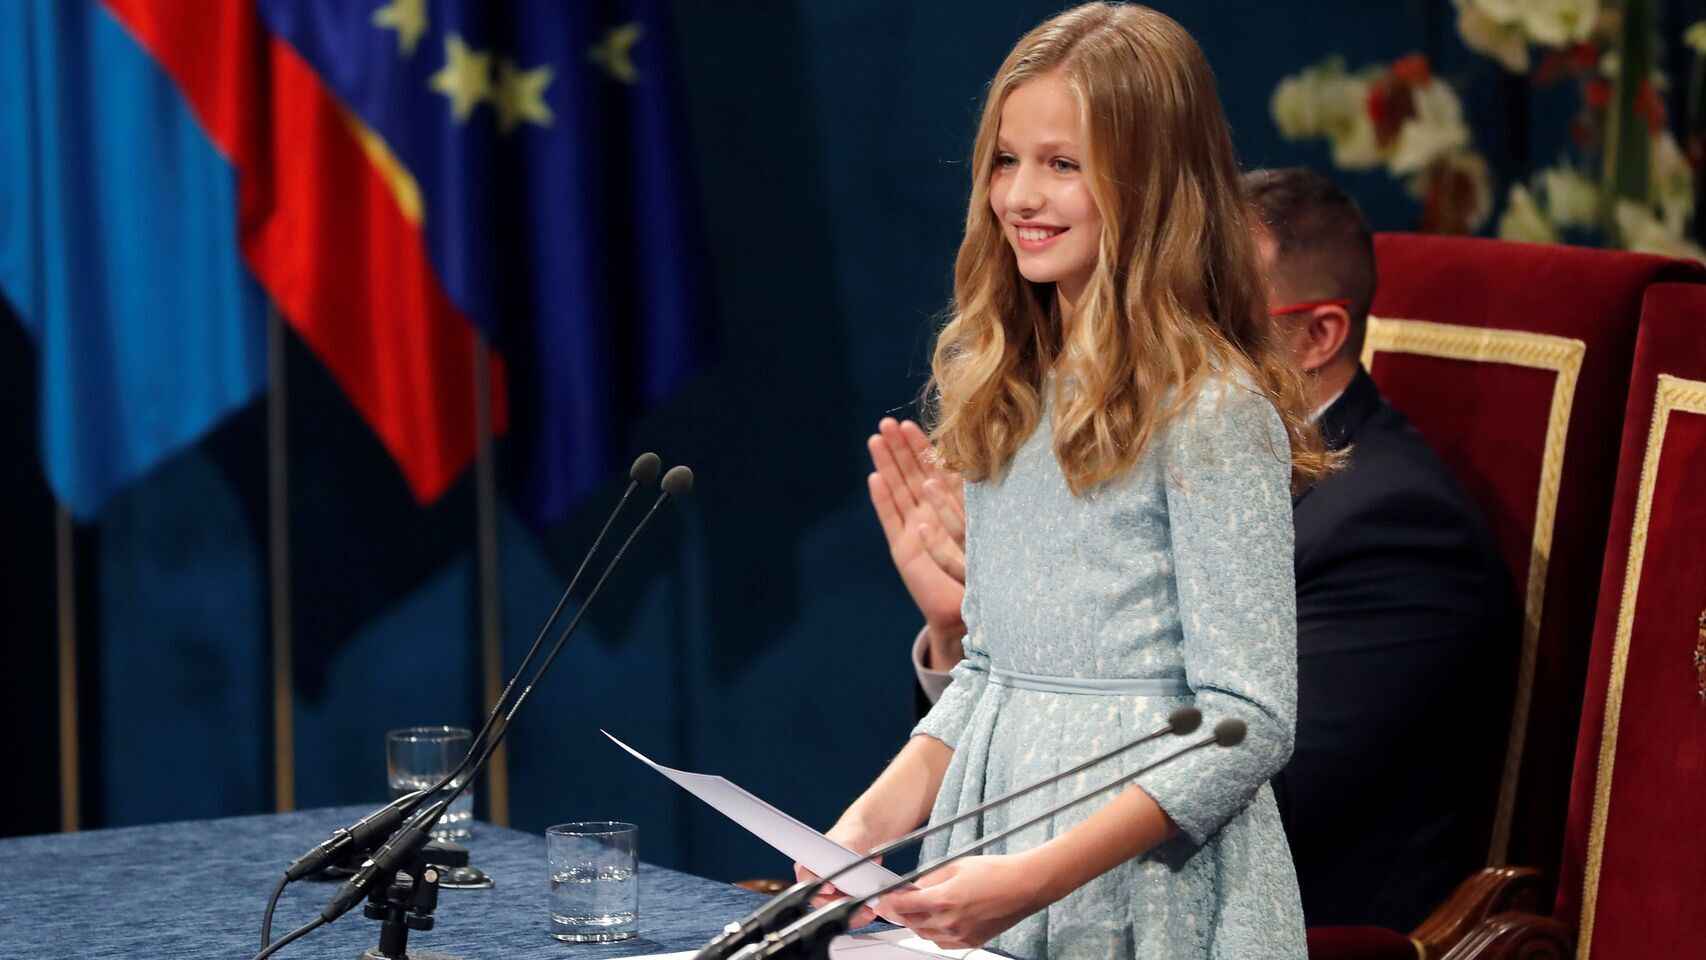 La princesa Leonor dio su primer discurso en los galardones que llevan su nombre en octubre de 2019.